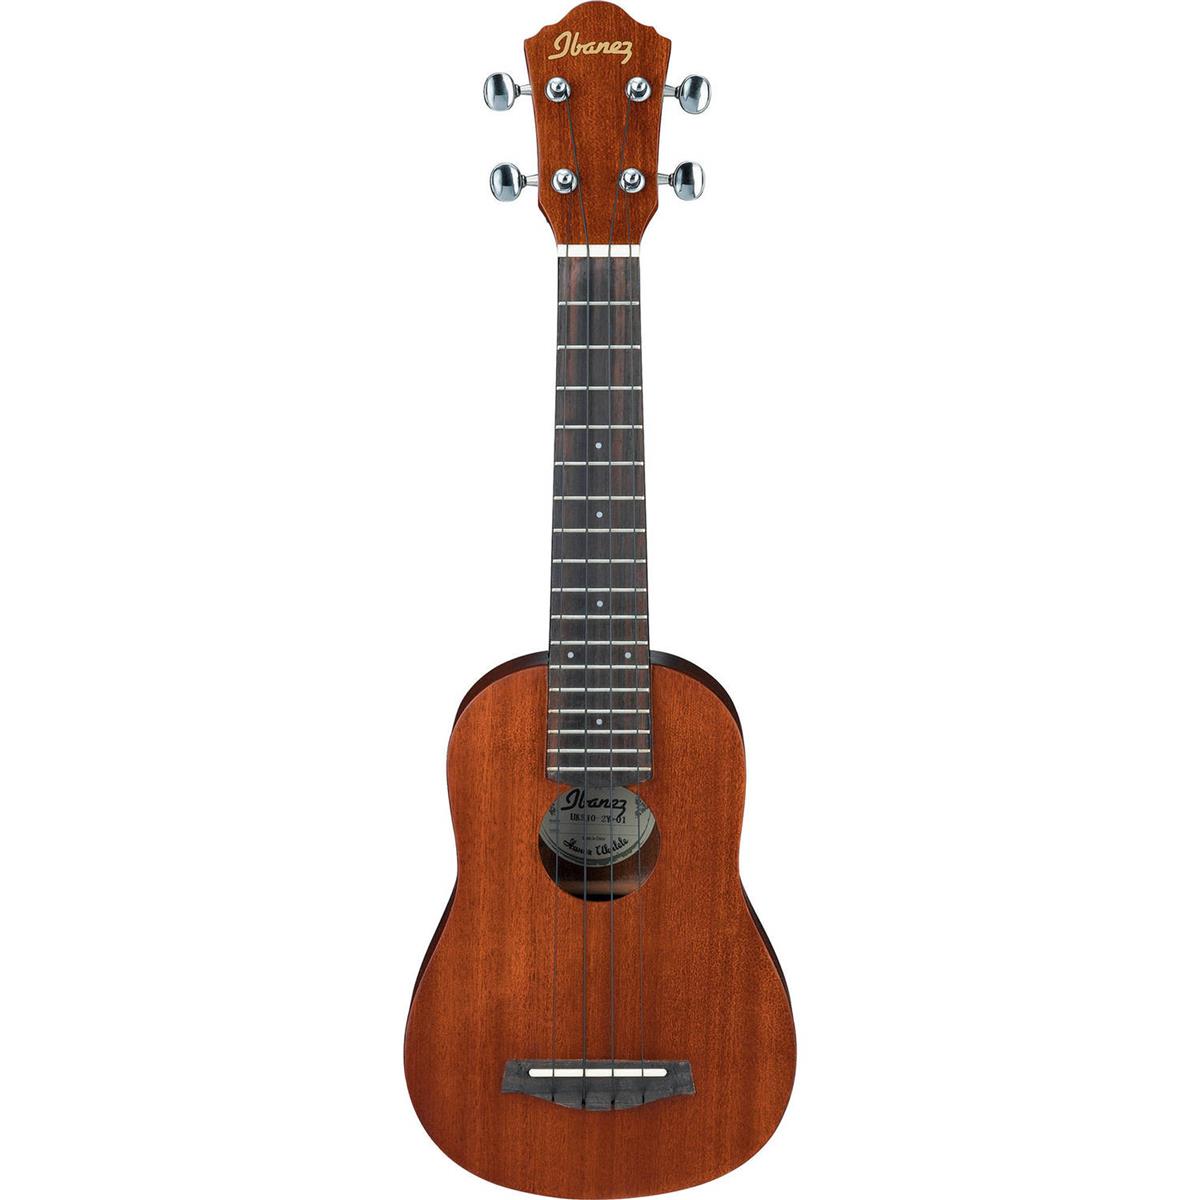 Image of Ibanez UKS10 Soprano Ukulele Acoustic Guitar